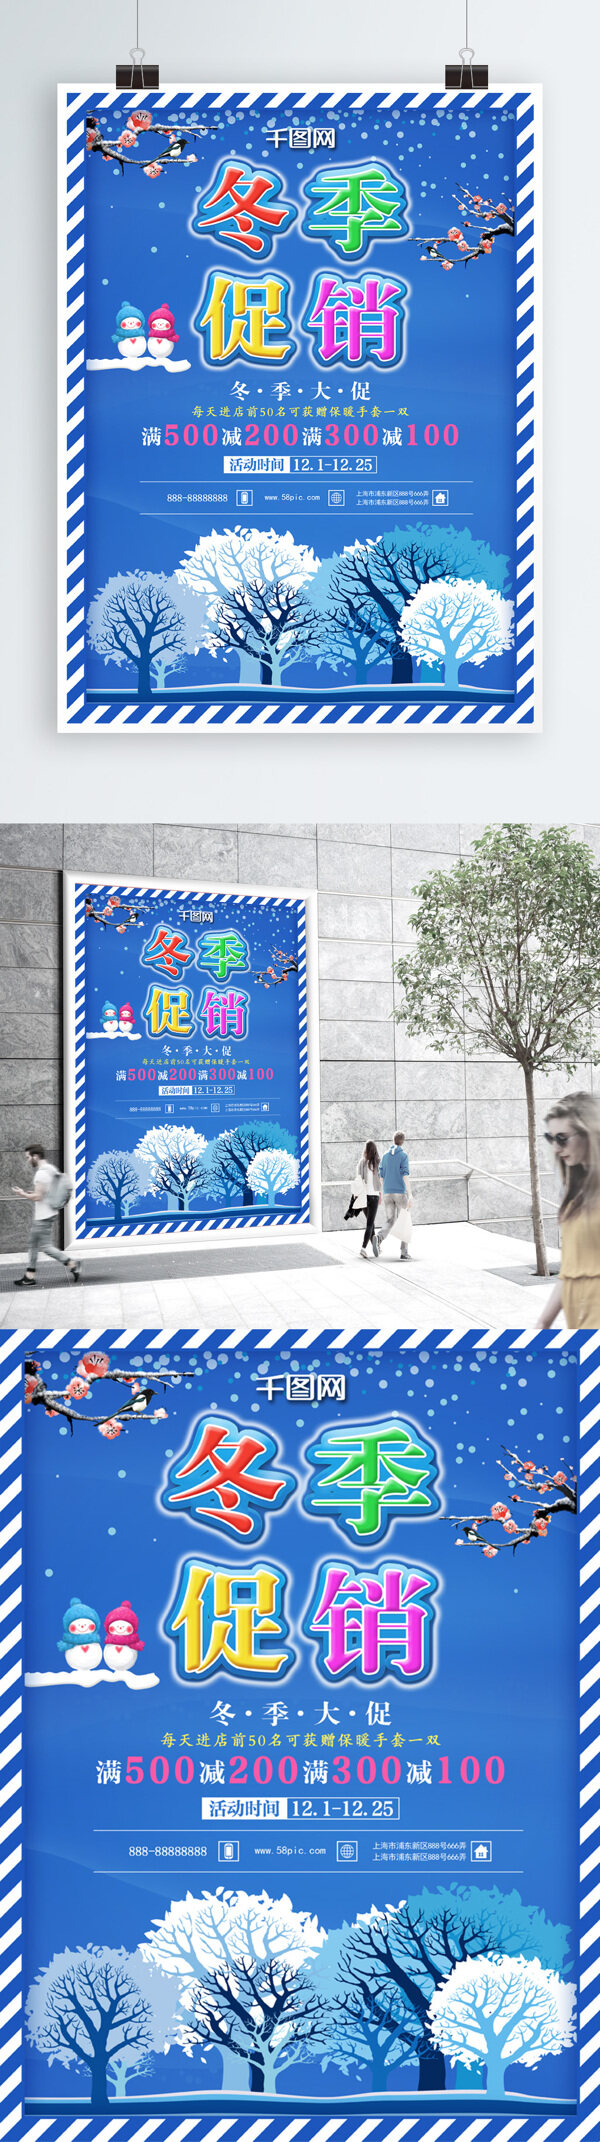 彩色童装宣传蓝色雪景冬季促销海报